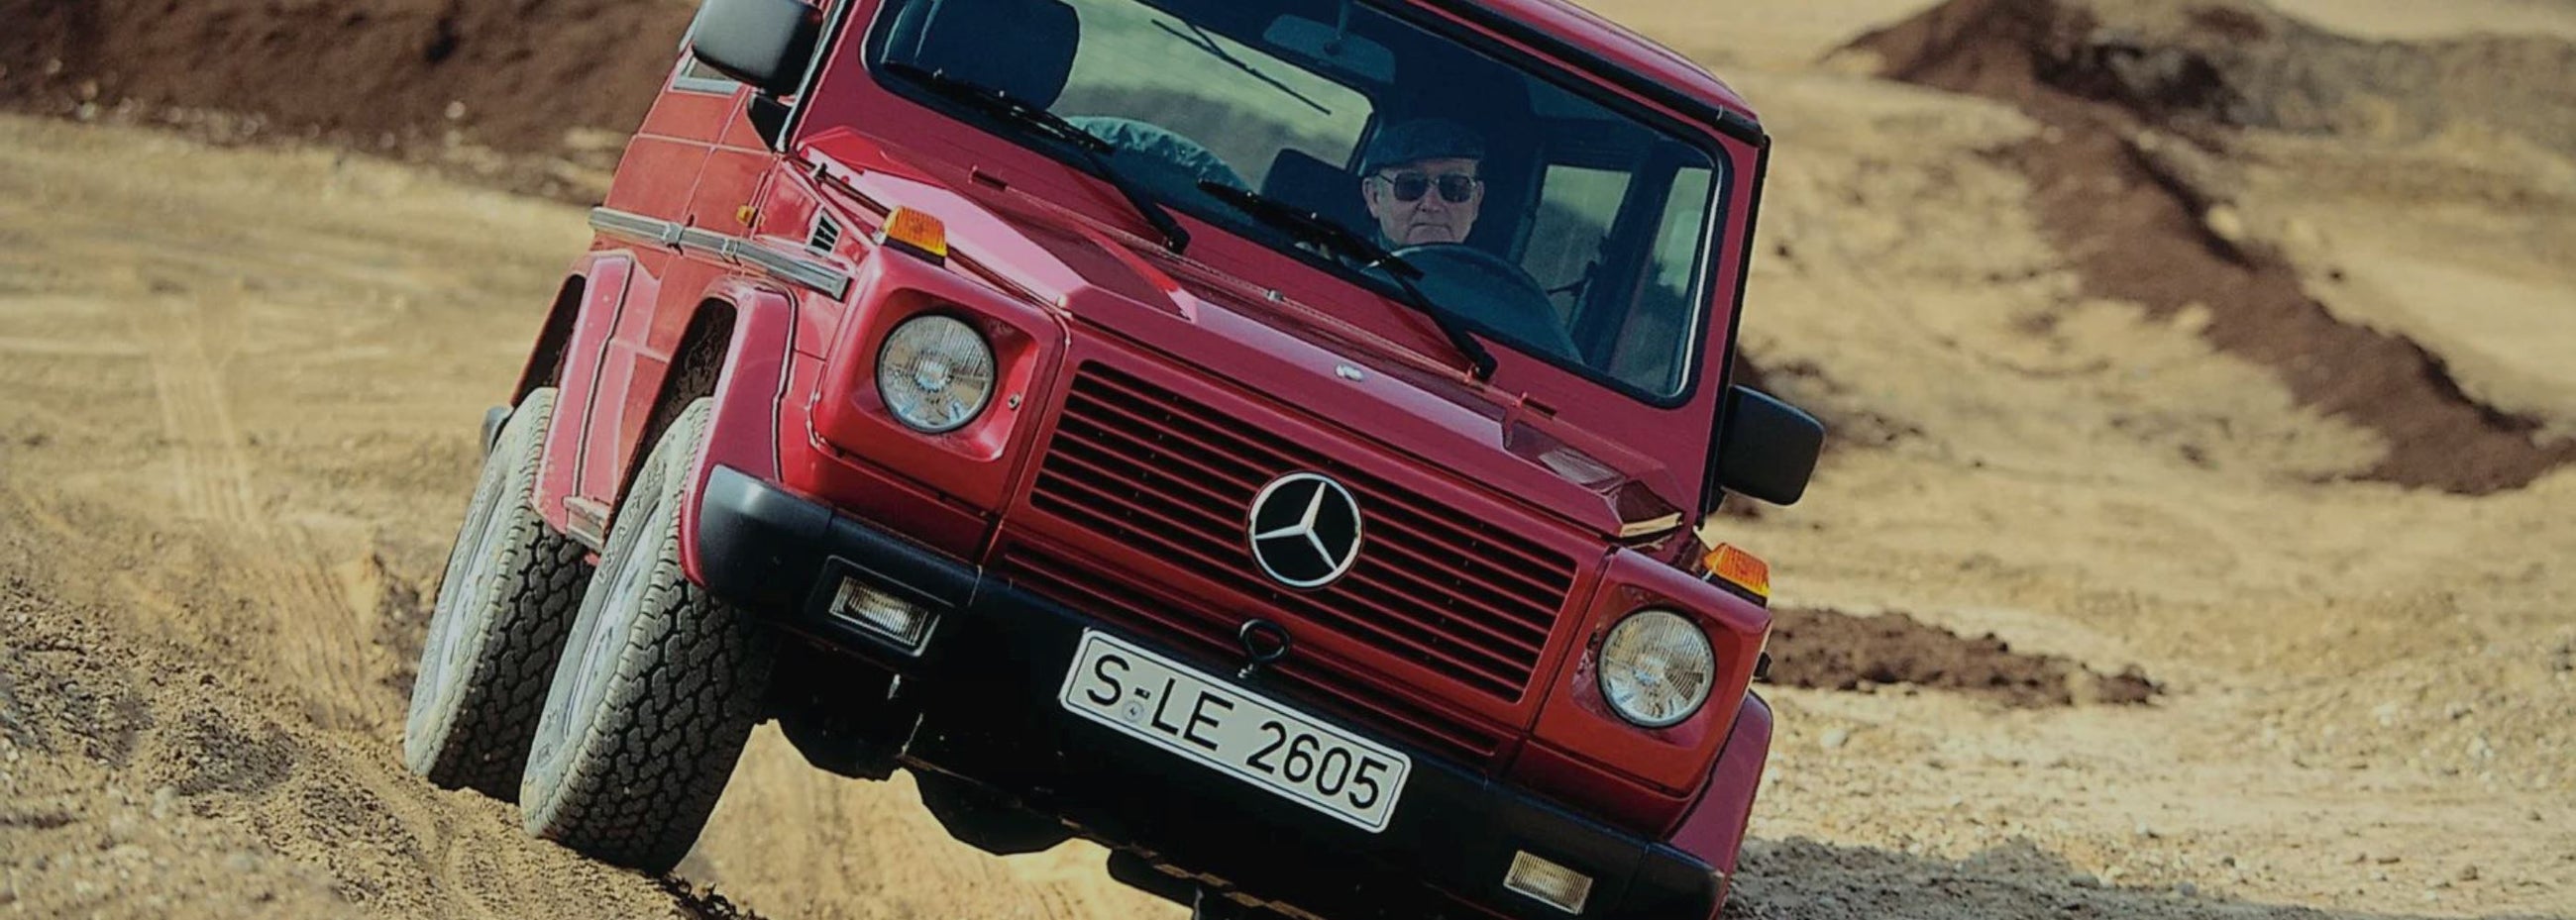 Mercedes - G Wagen 1991 - 2018